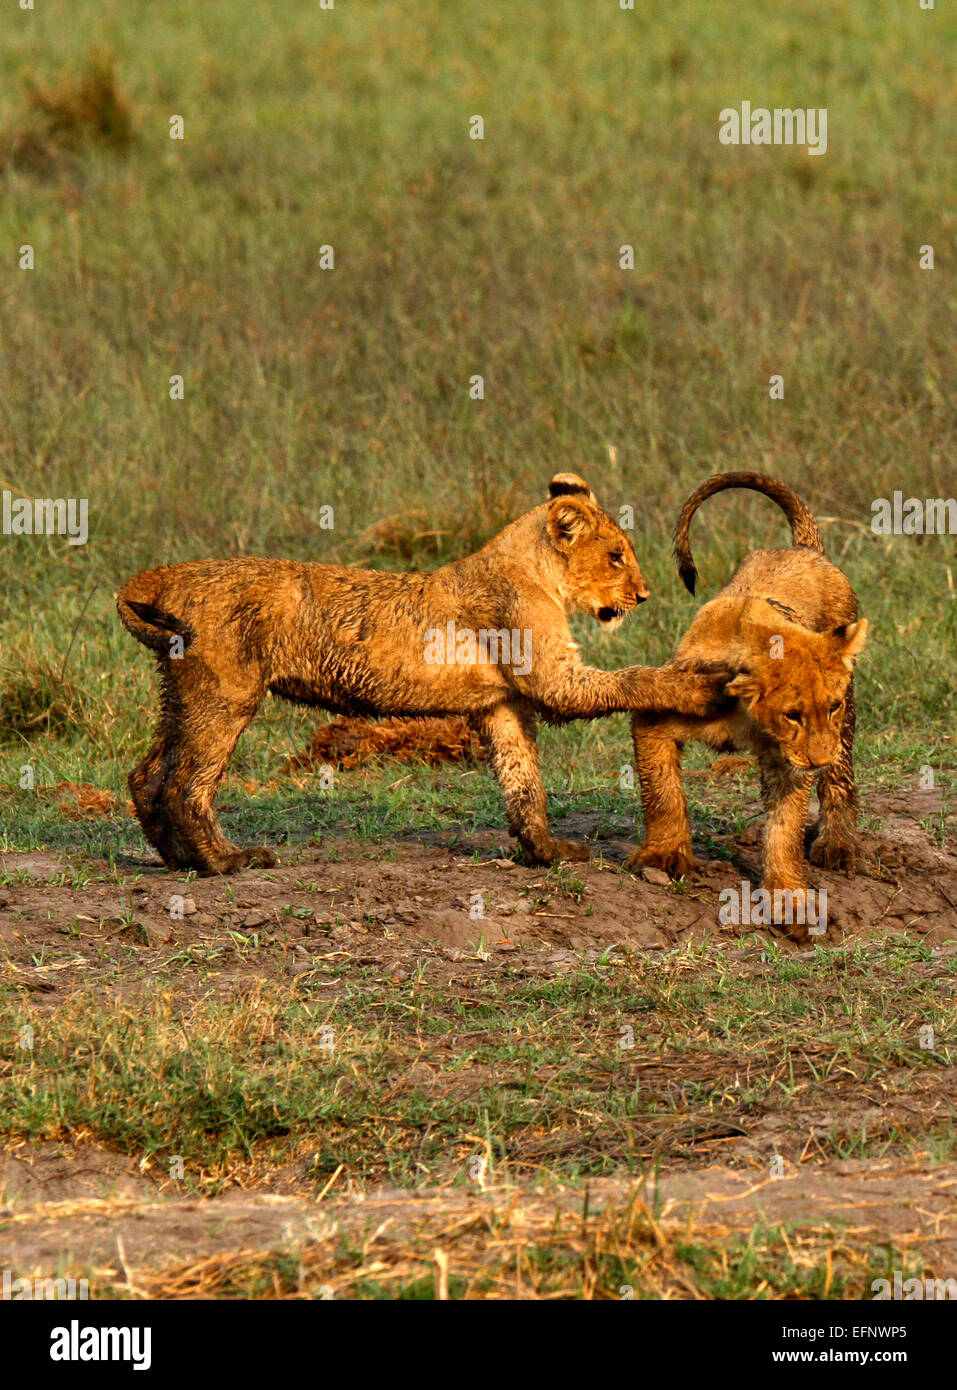 Una coppia di Wild African Lion cubs giocare insieme, parte di un grande orgoglio girato in Botswana in location a Savuti Marsh Foto Stock